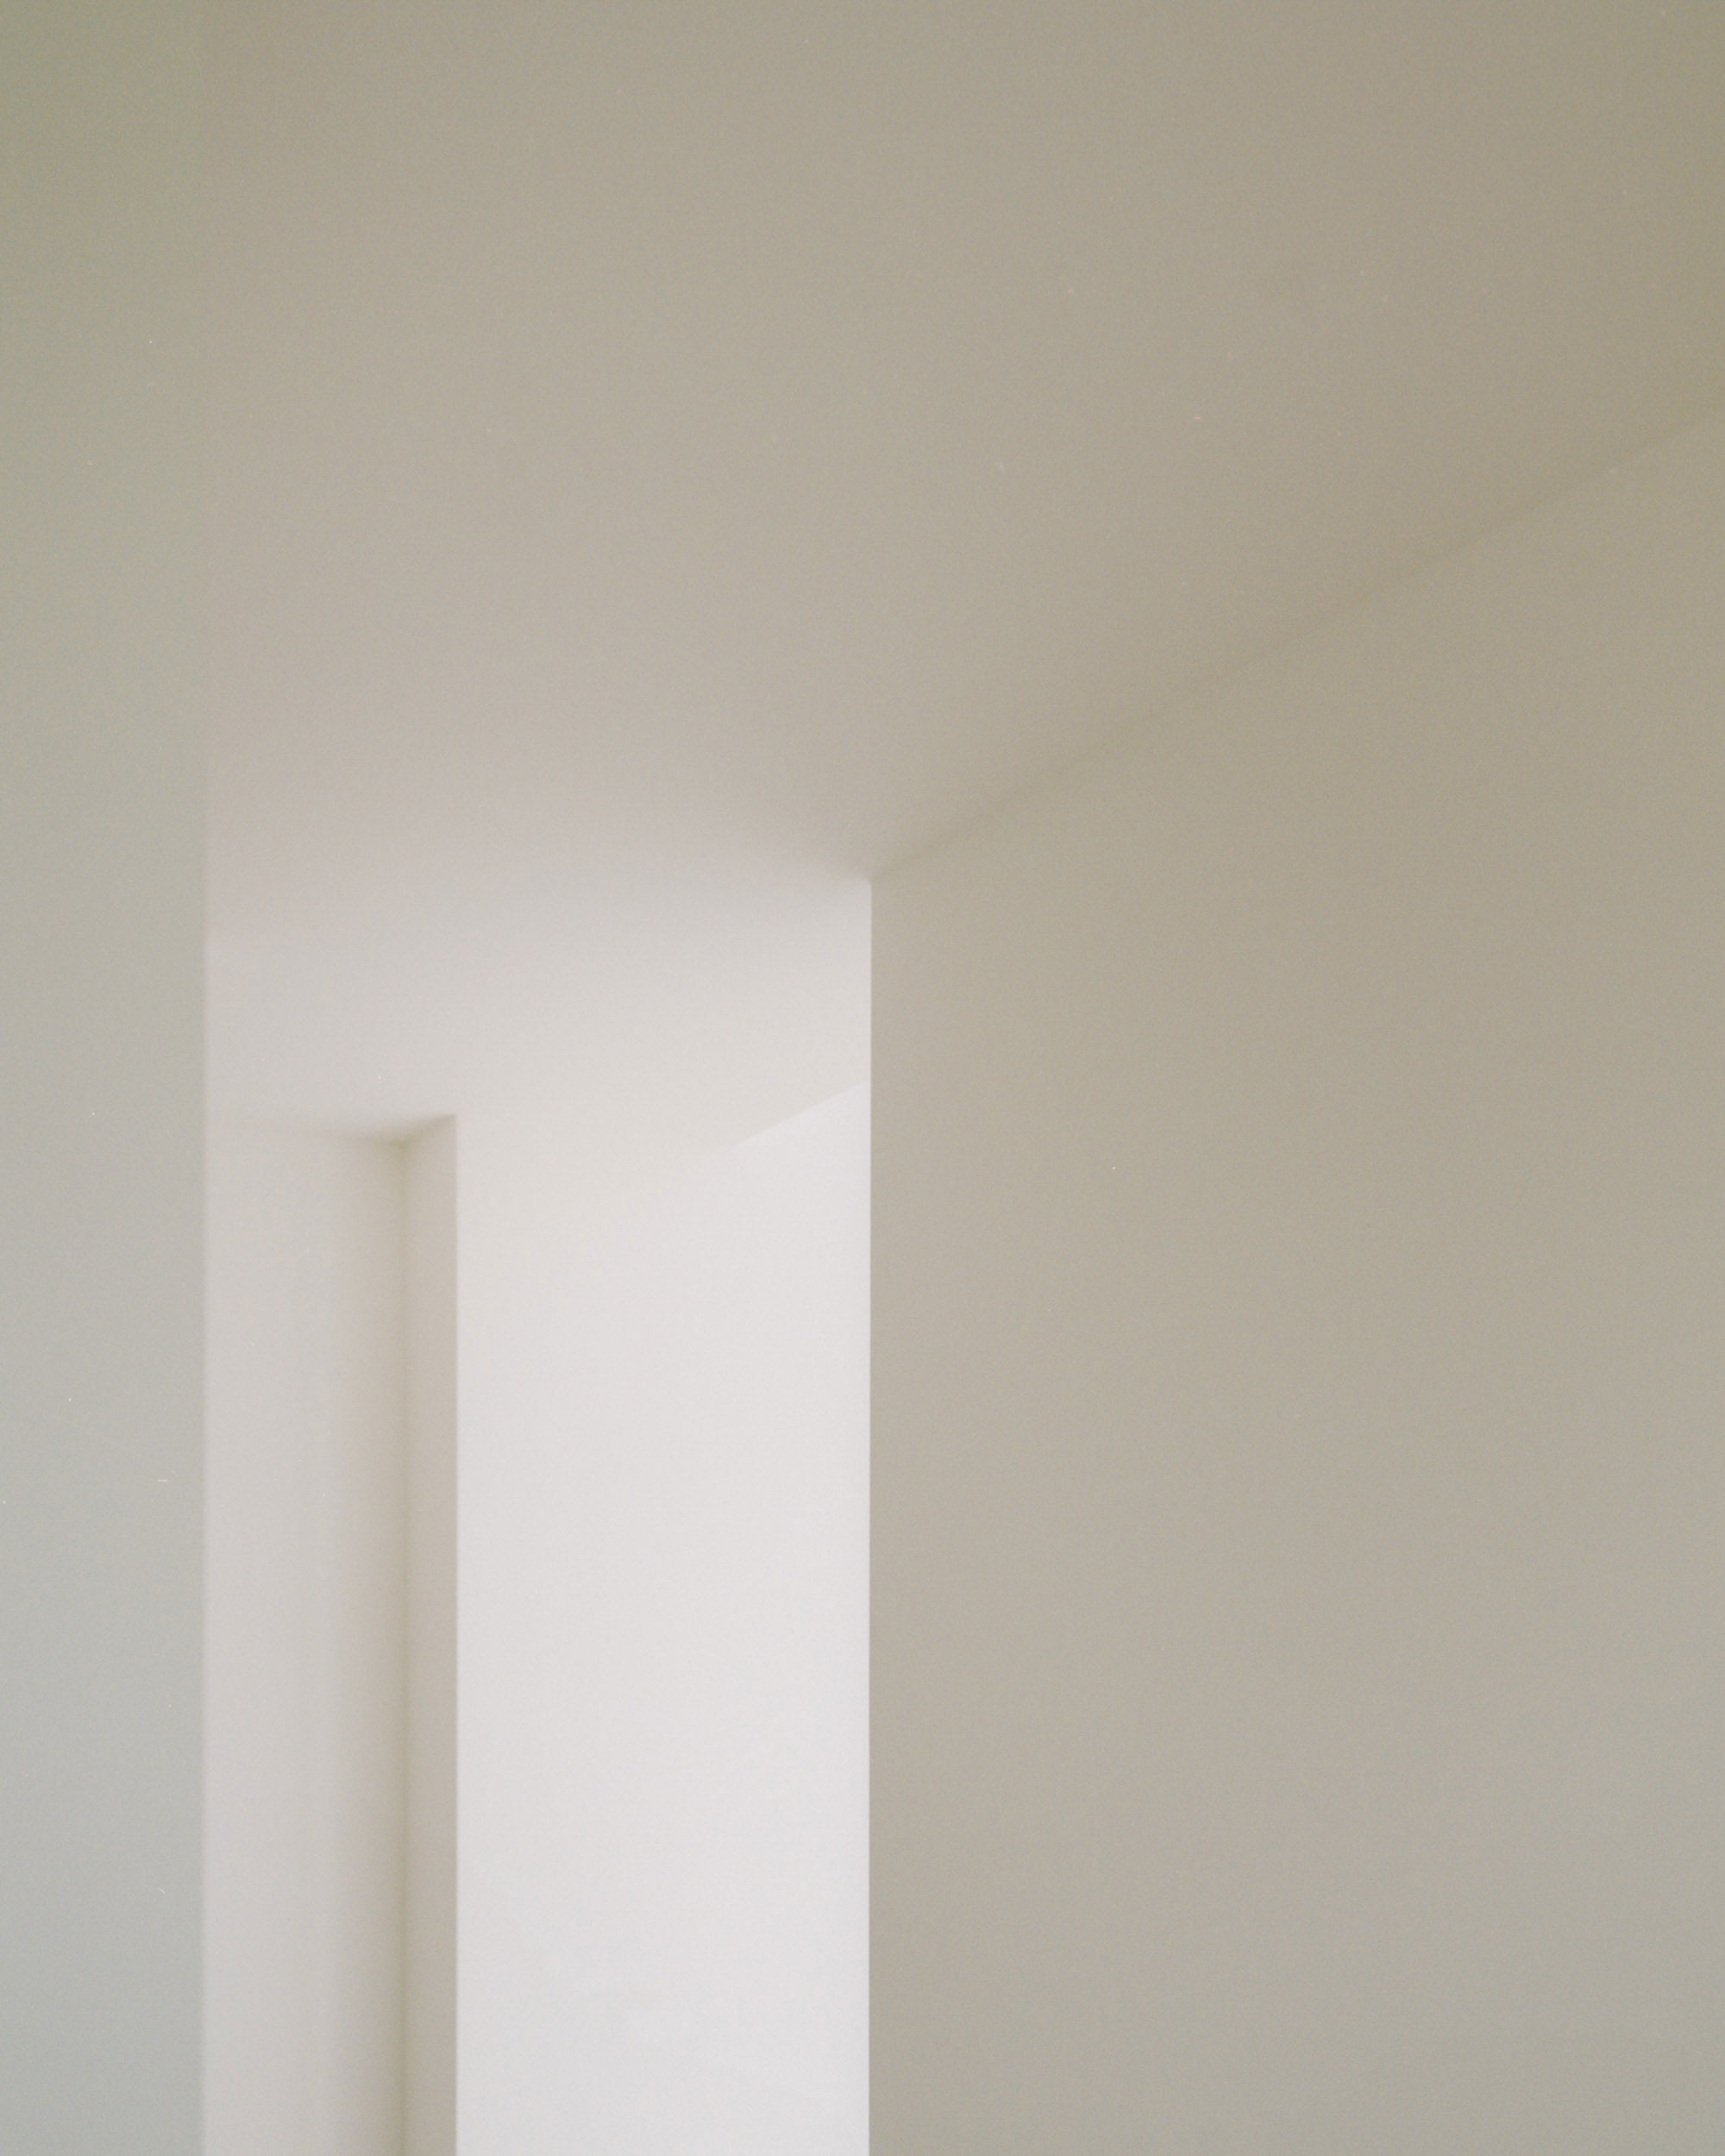 House NF by Didonè Comacchio Architects - Gessato